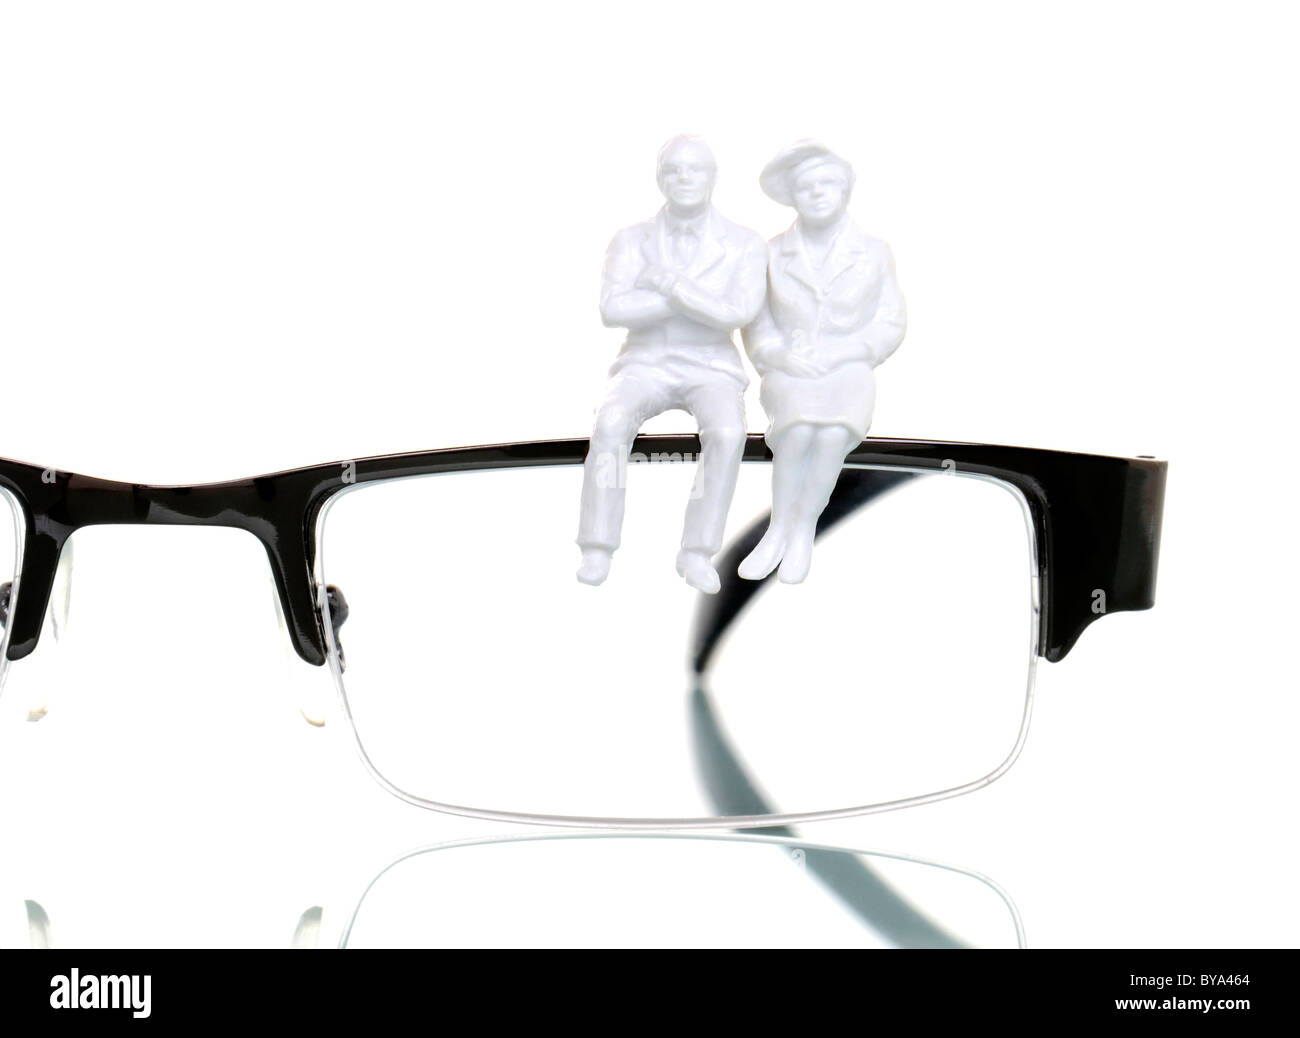 Dos figuras de jubilados sentados en un par de gafas, imagen simbólica Foto de stock